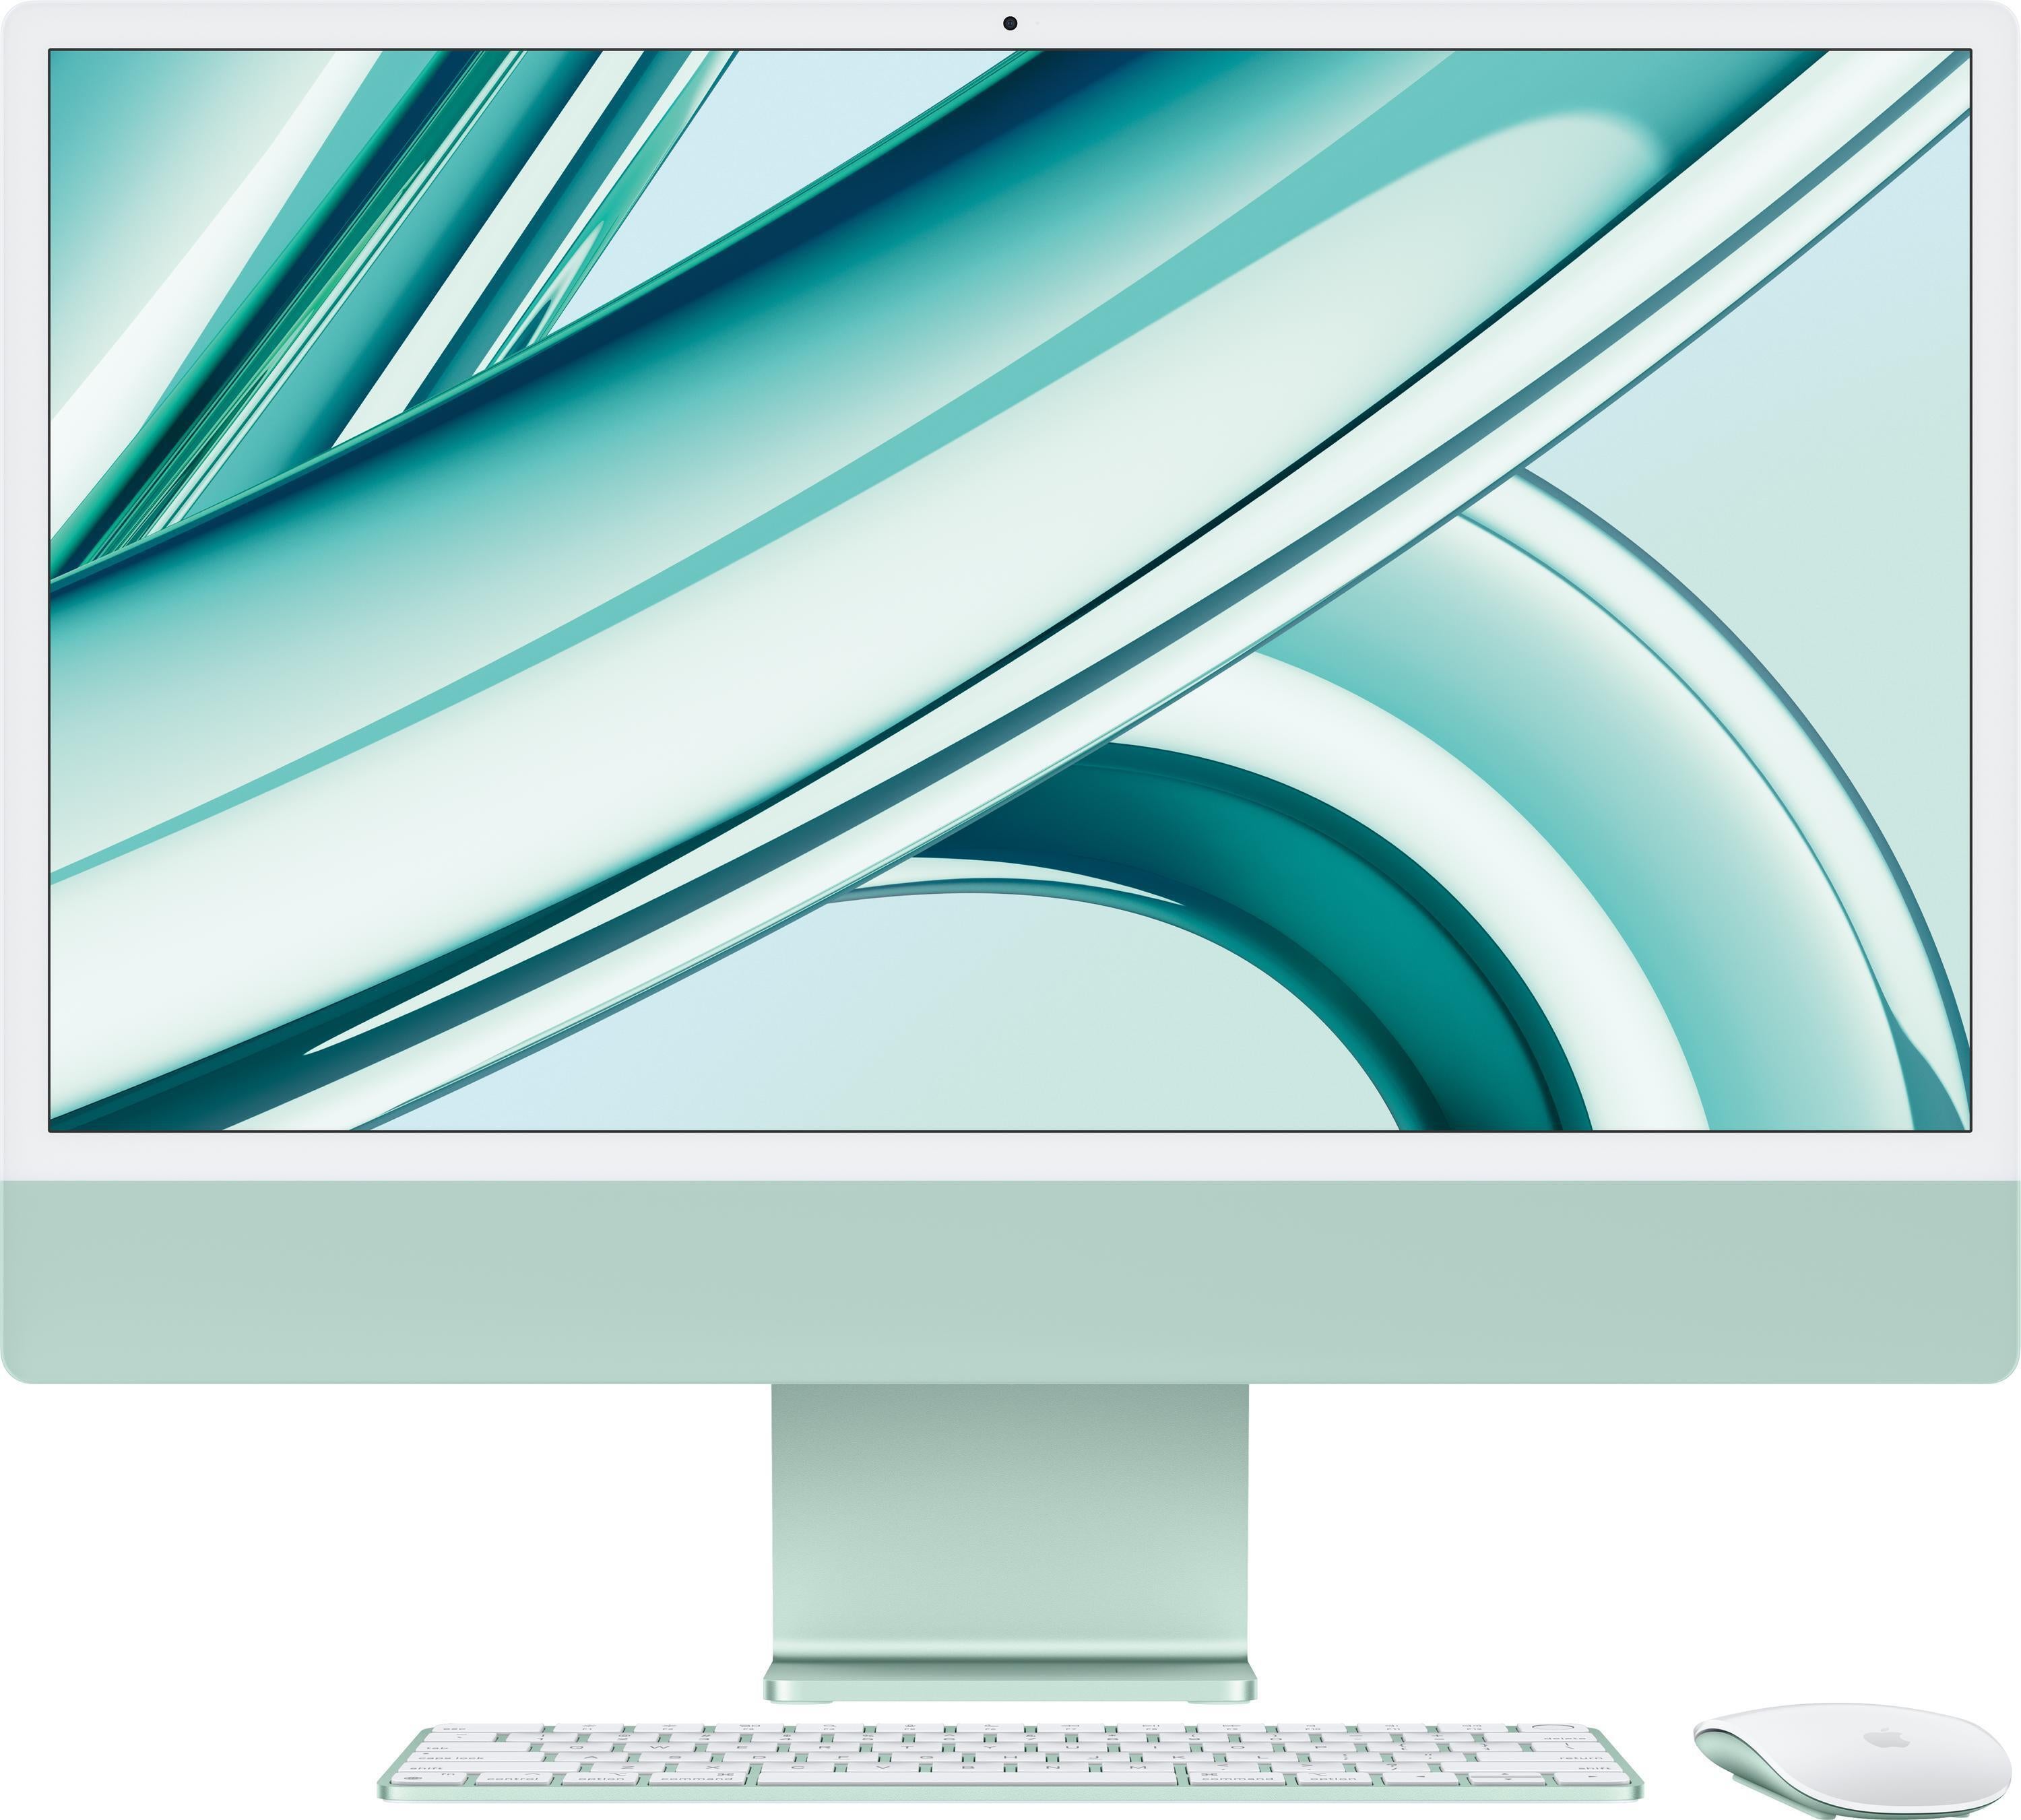 Apple Mac mini 3.0GHz i5 6-Core 8GB/512GB Space Gray | Sweetwater